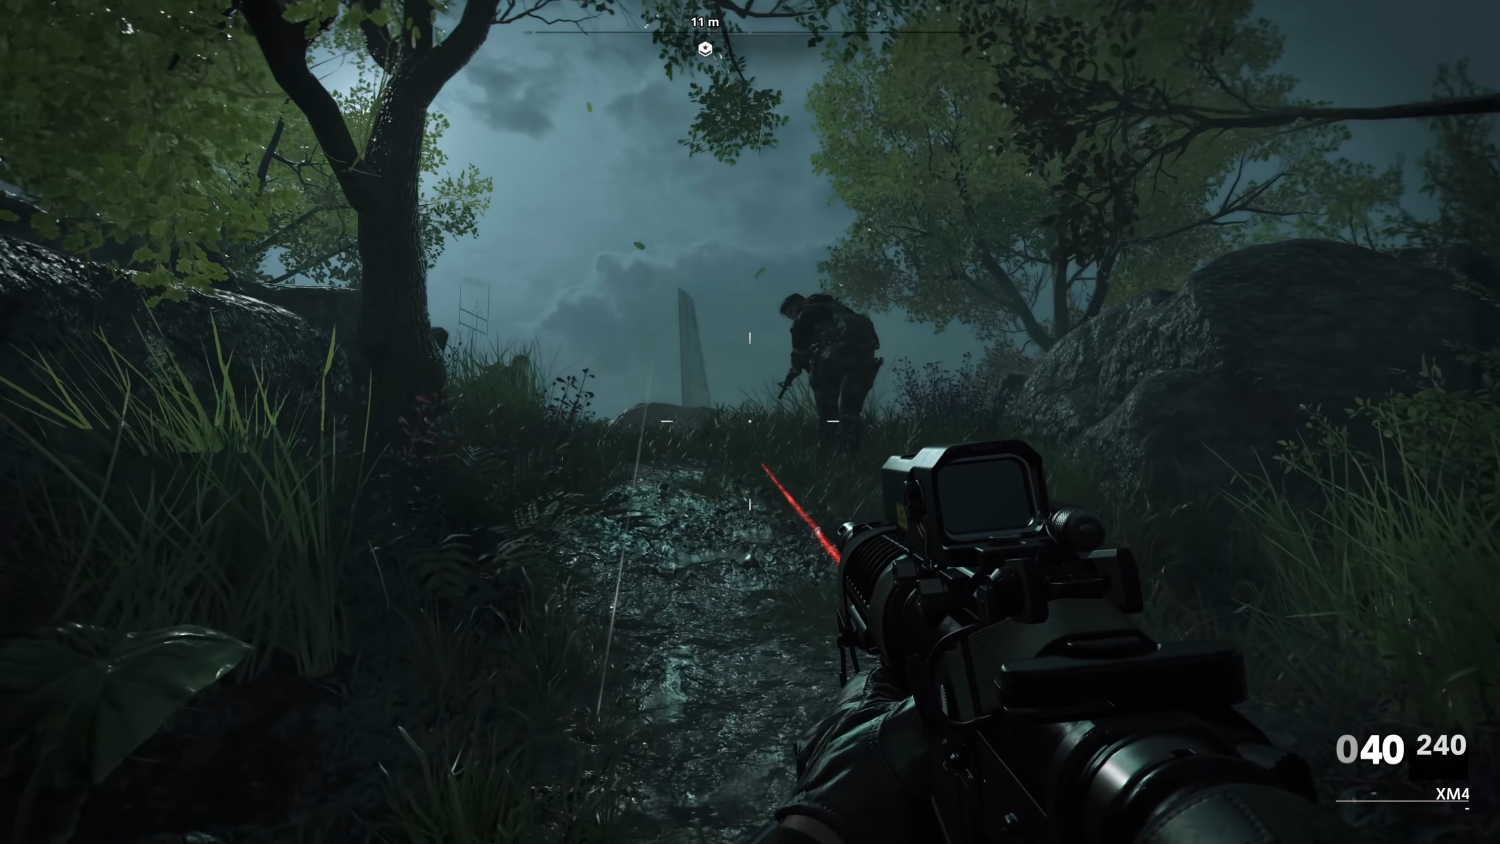 Immagine pubblicata in relazione al seguente contenuto: Gameplay footage e screenshot in 4K di Call of Duty: Black Ops Cold War | Nome immagine: news31153_Call-of-Duty-Black-Ops-Cold-War_1.png